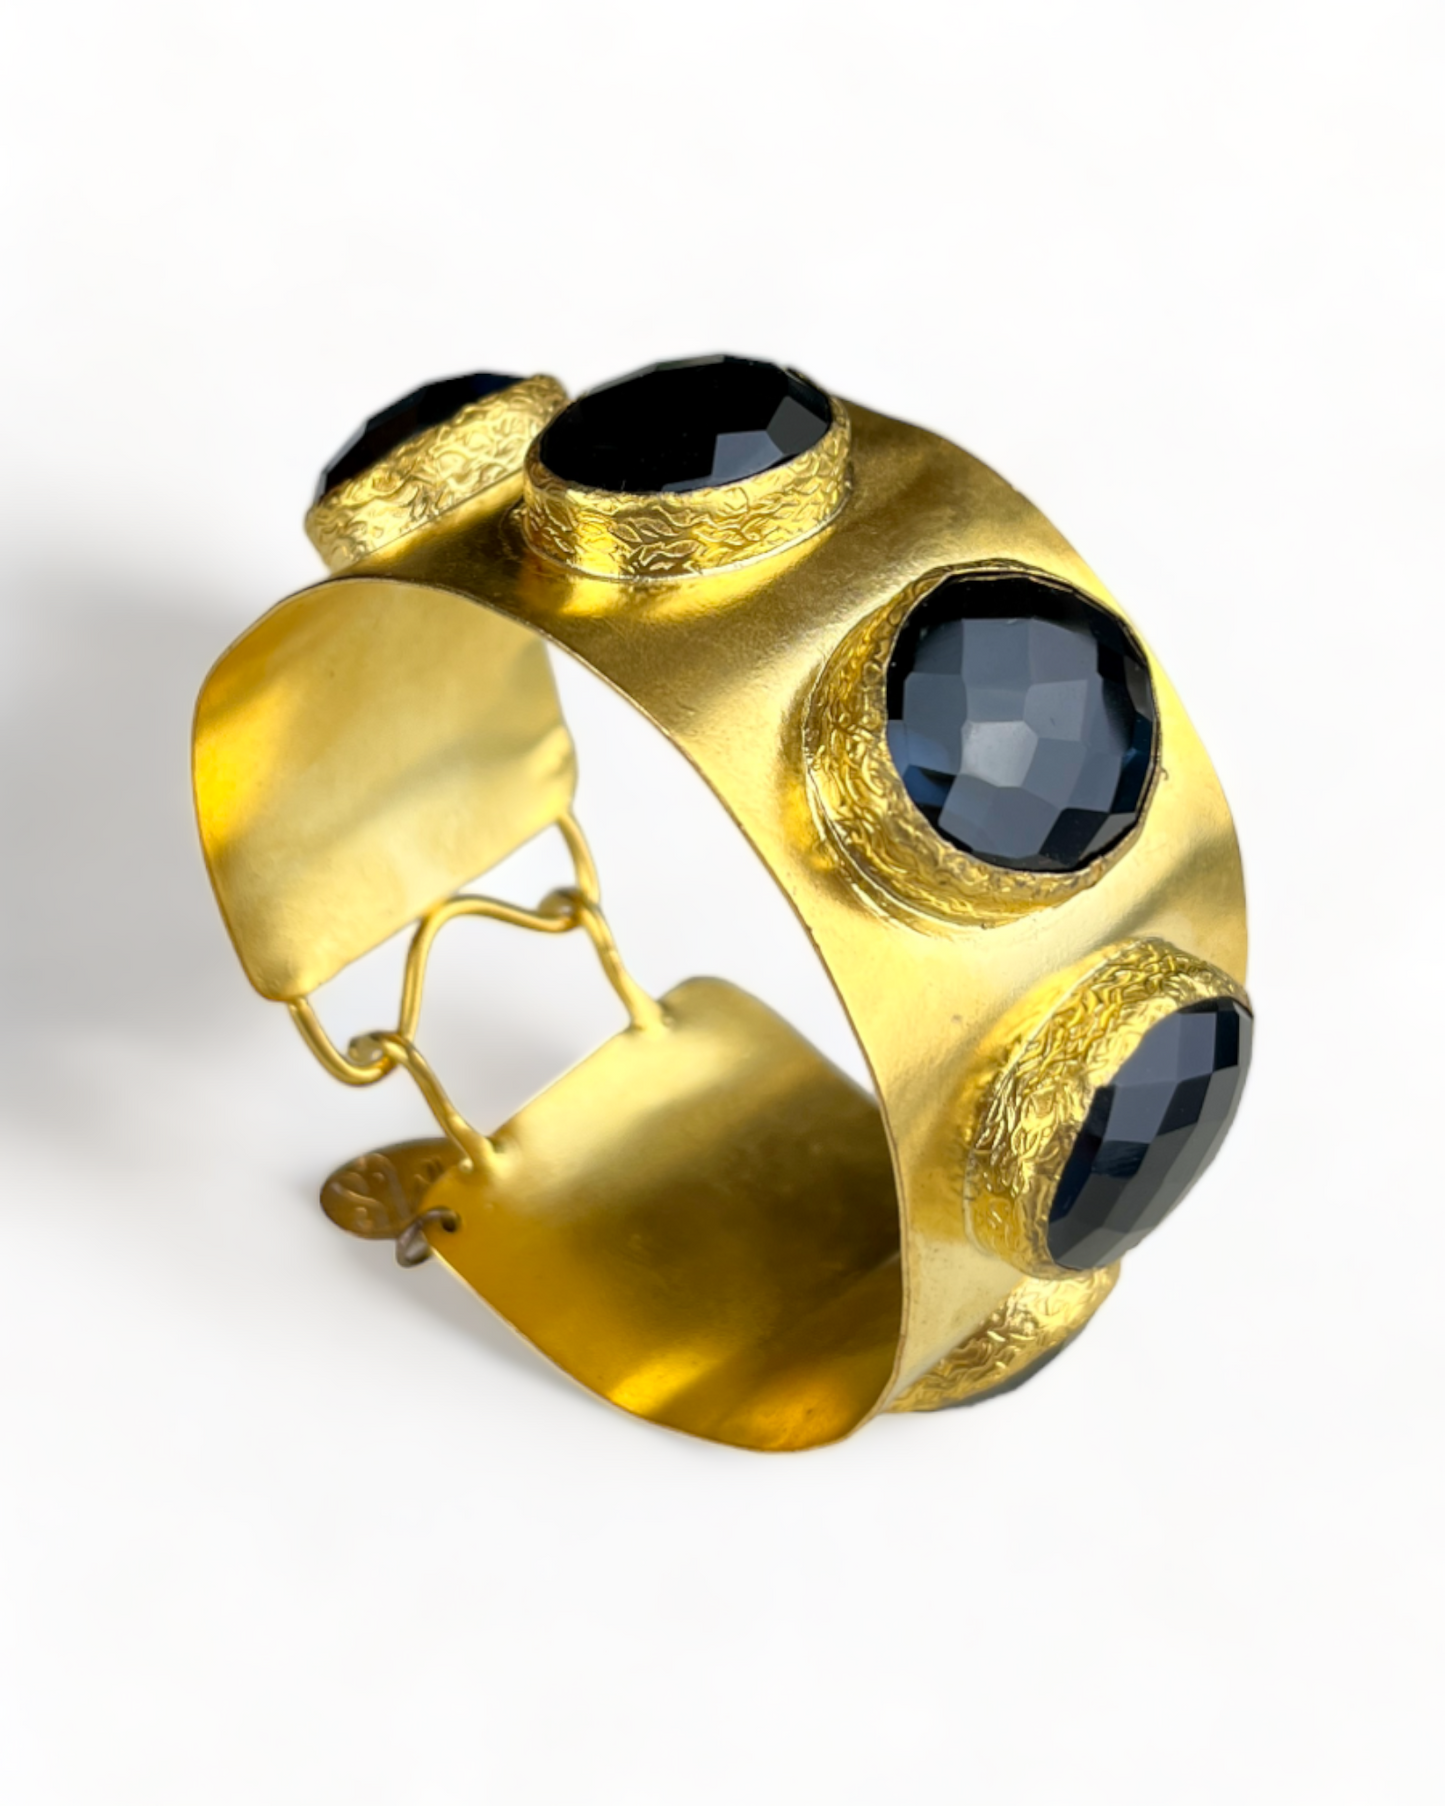 Golden Bracelet with Black Faux Stones